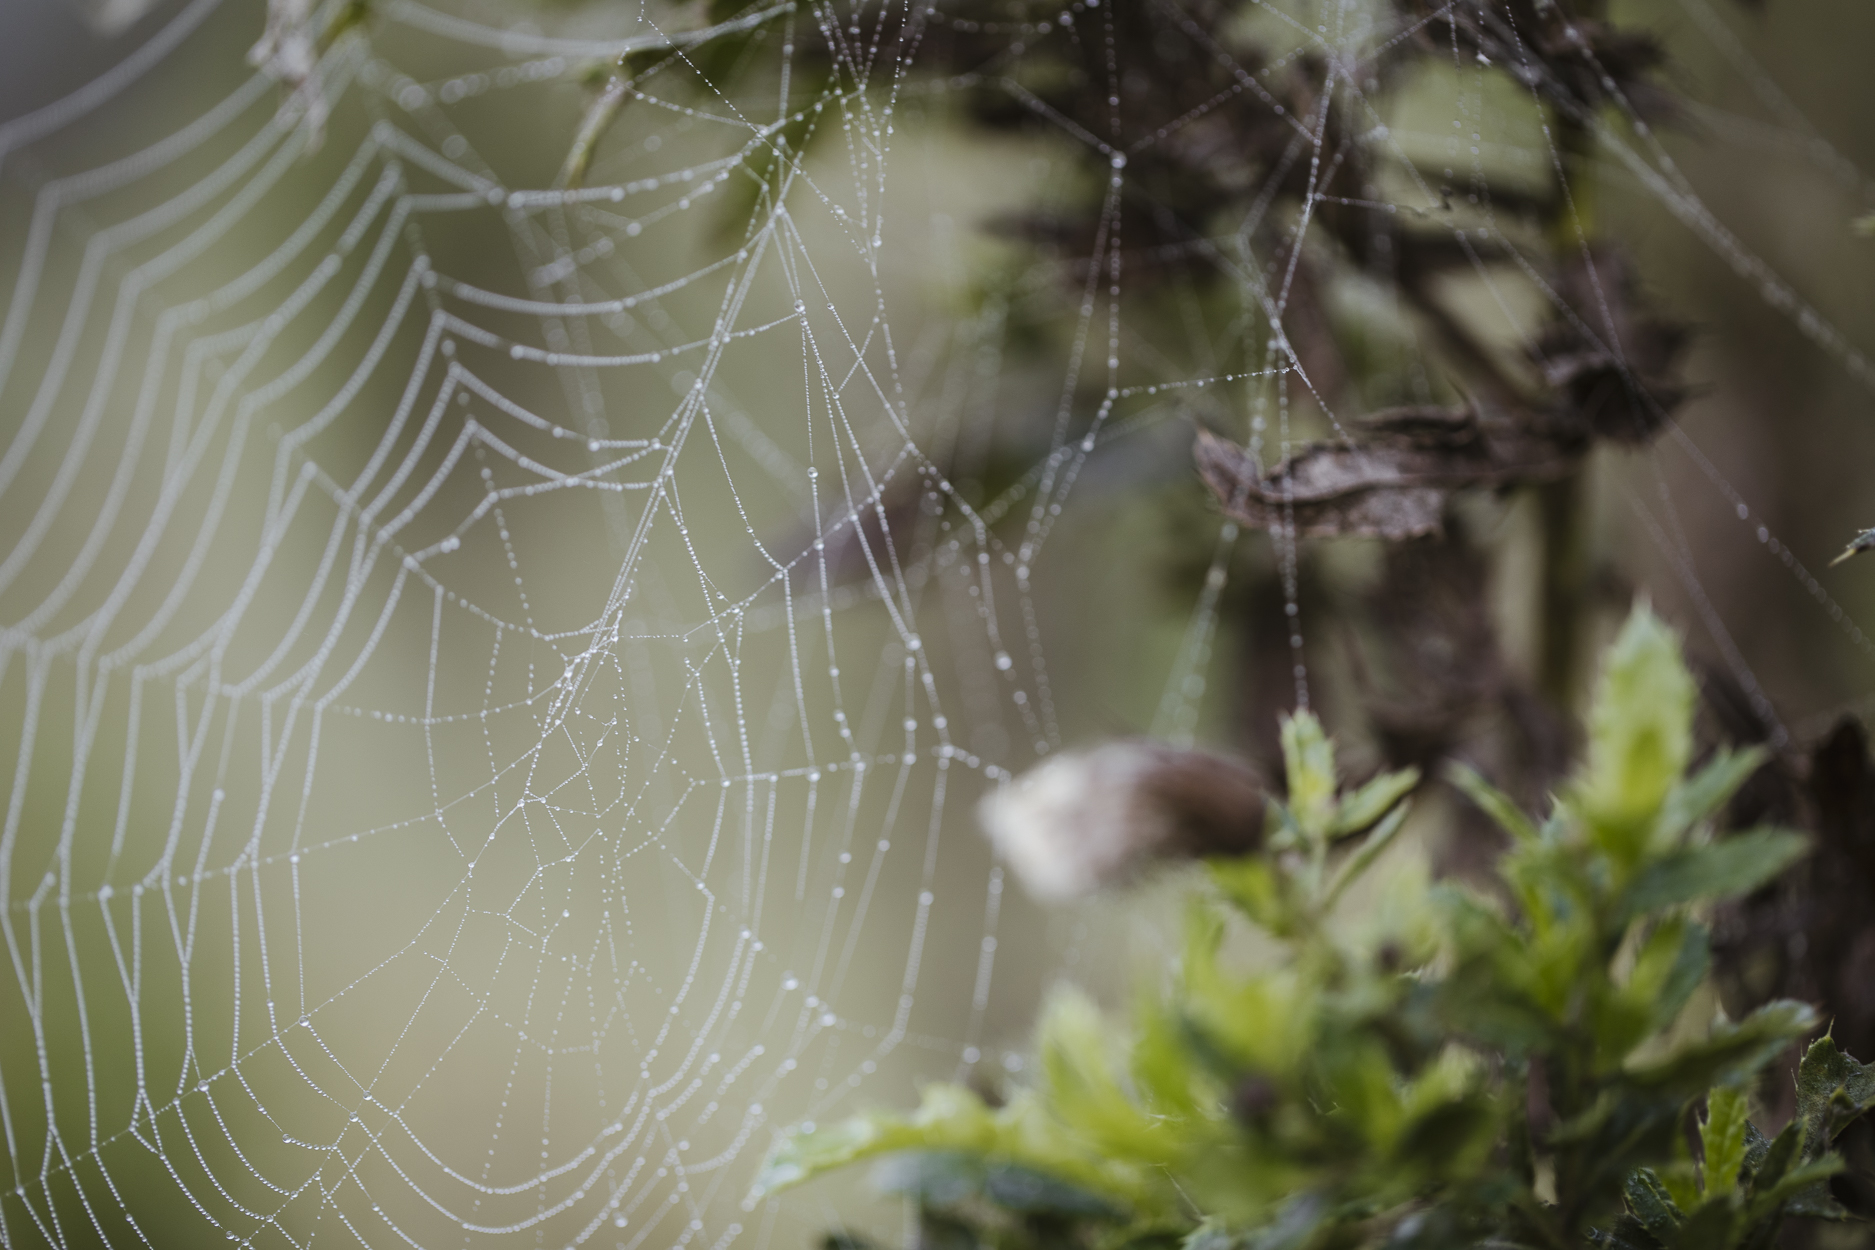 Naturwunder Spinnennetz, gesehen beim Paar-Fotoshooting im Nebel